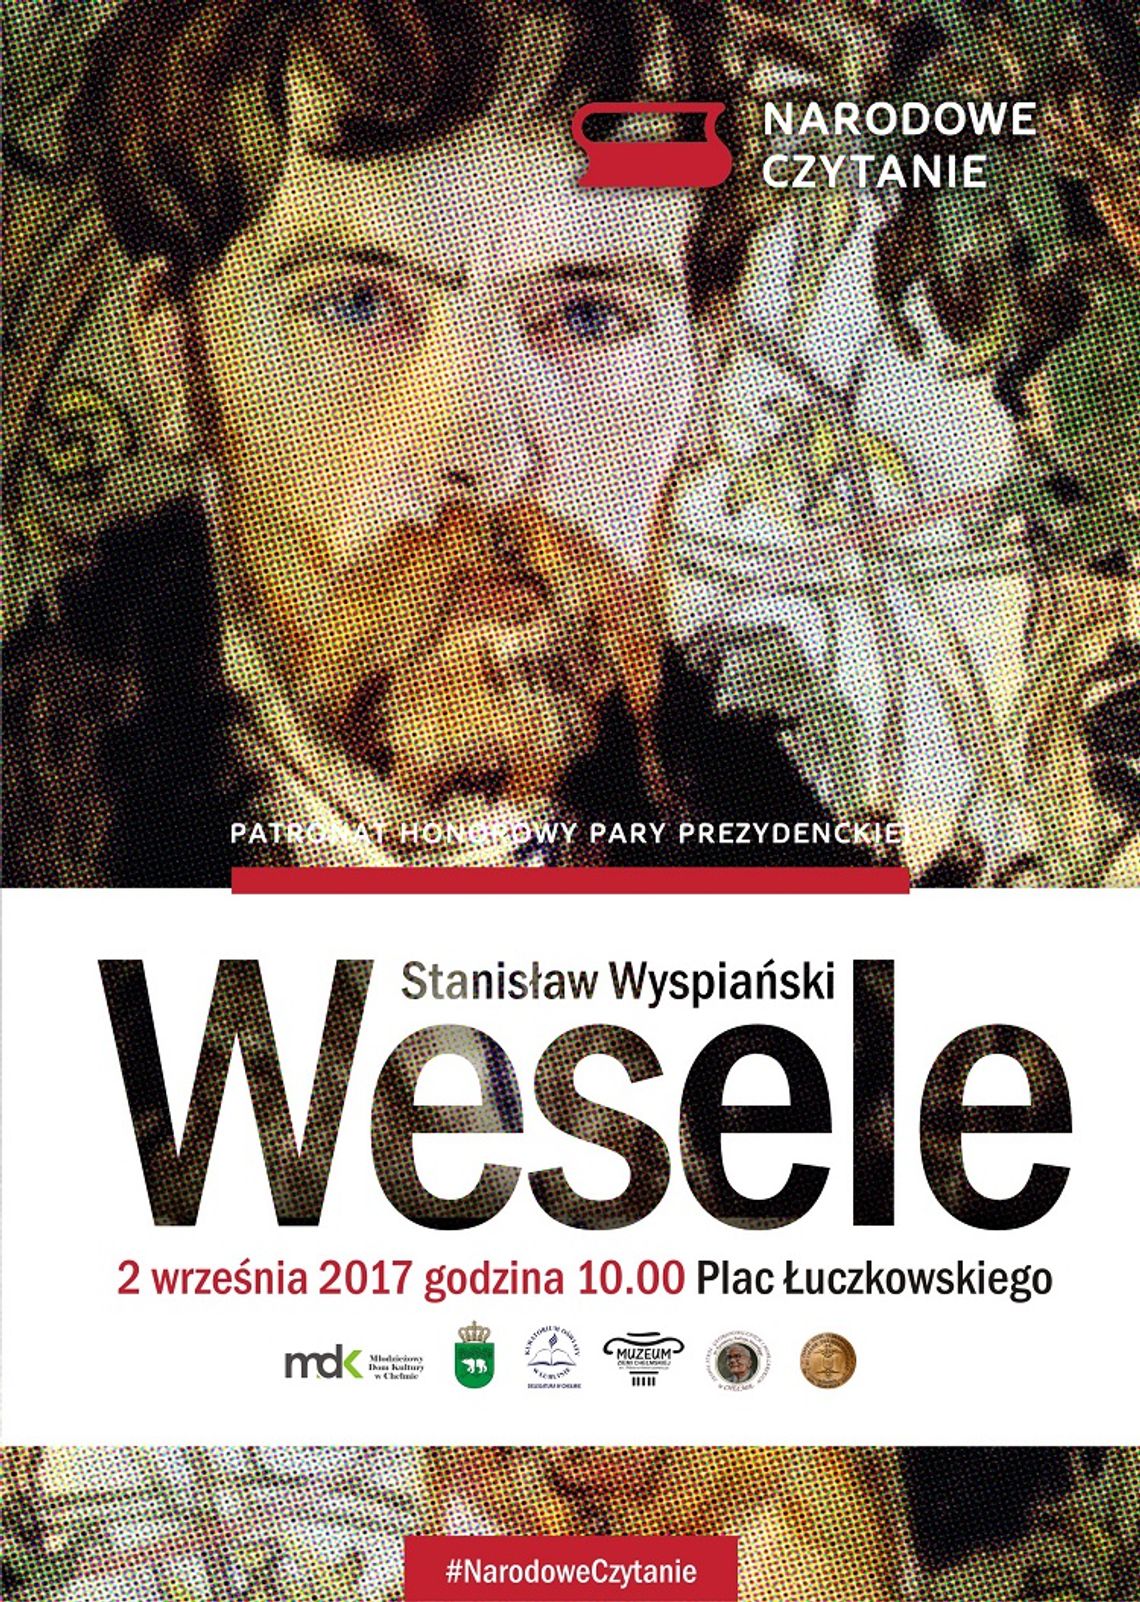 Narodowe Czytanie "Wesela" już jutro na Placu Łuczkowskiego